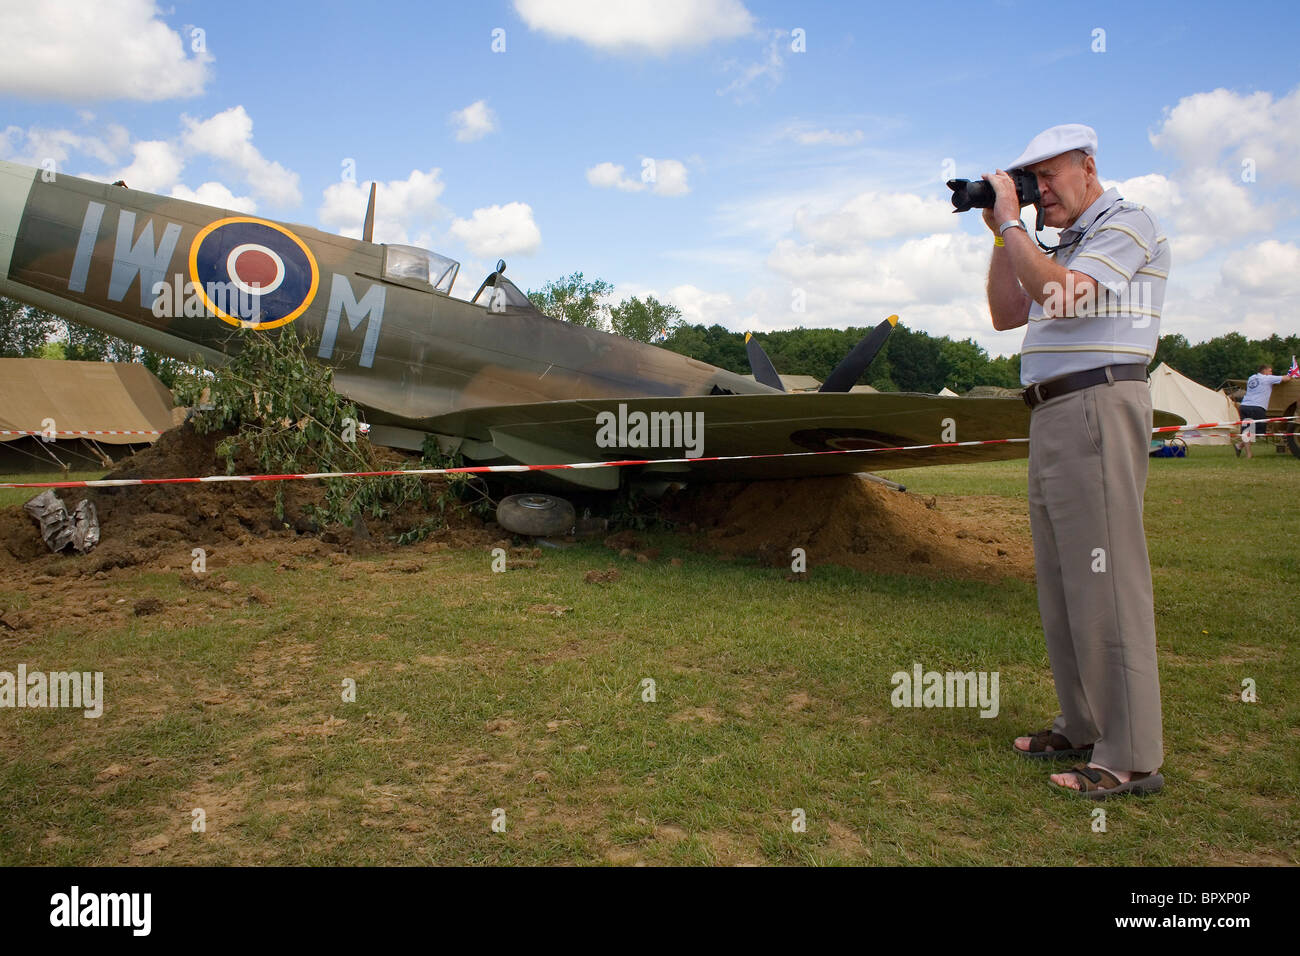 Un uomo in un cappuccio bianco scatta una foto accanto ad un aereo Spitfire. Foto Stock